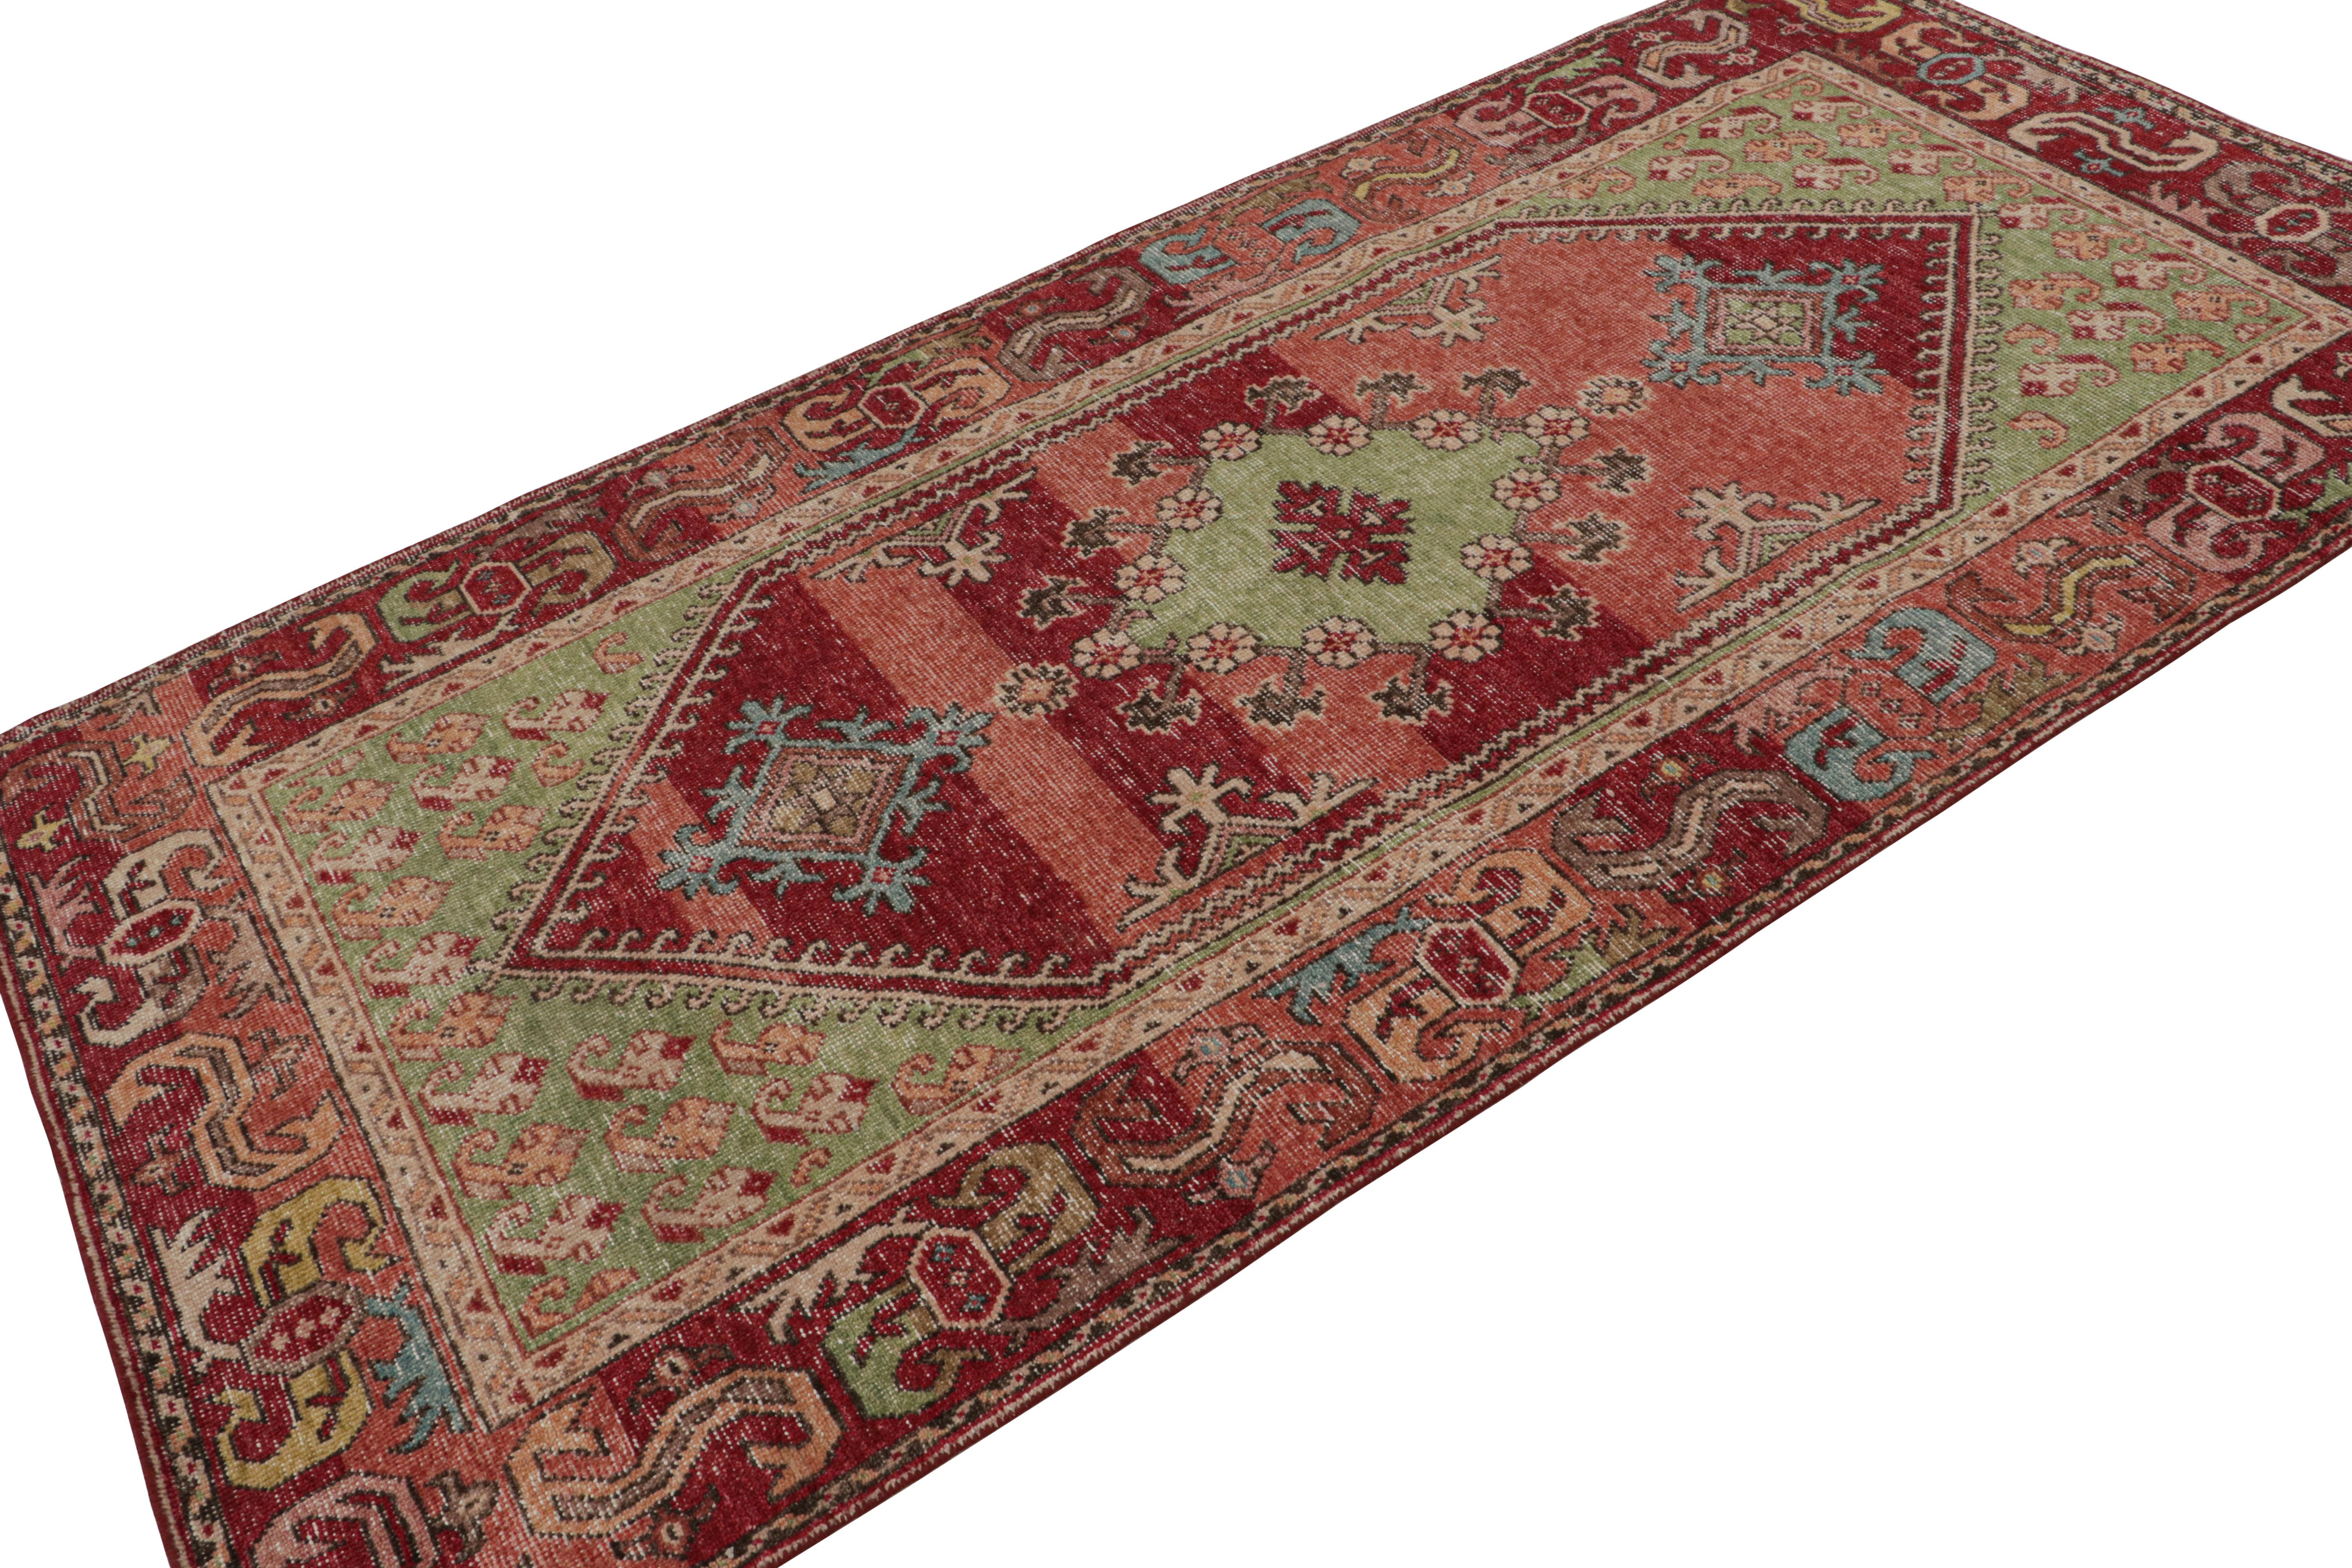 Noué à la main en laine, ce tapis contemporain 4x8, inspiré des tapis orientaux anciens et en particulier des sensibilités tribales turques, est un nouvel ajout à la collection Homage. 

Sur le Design : 

Noué à la main en laine, cette pièce est